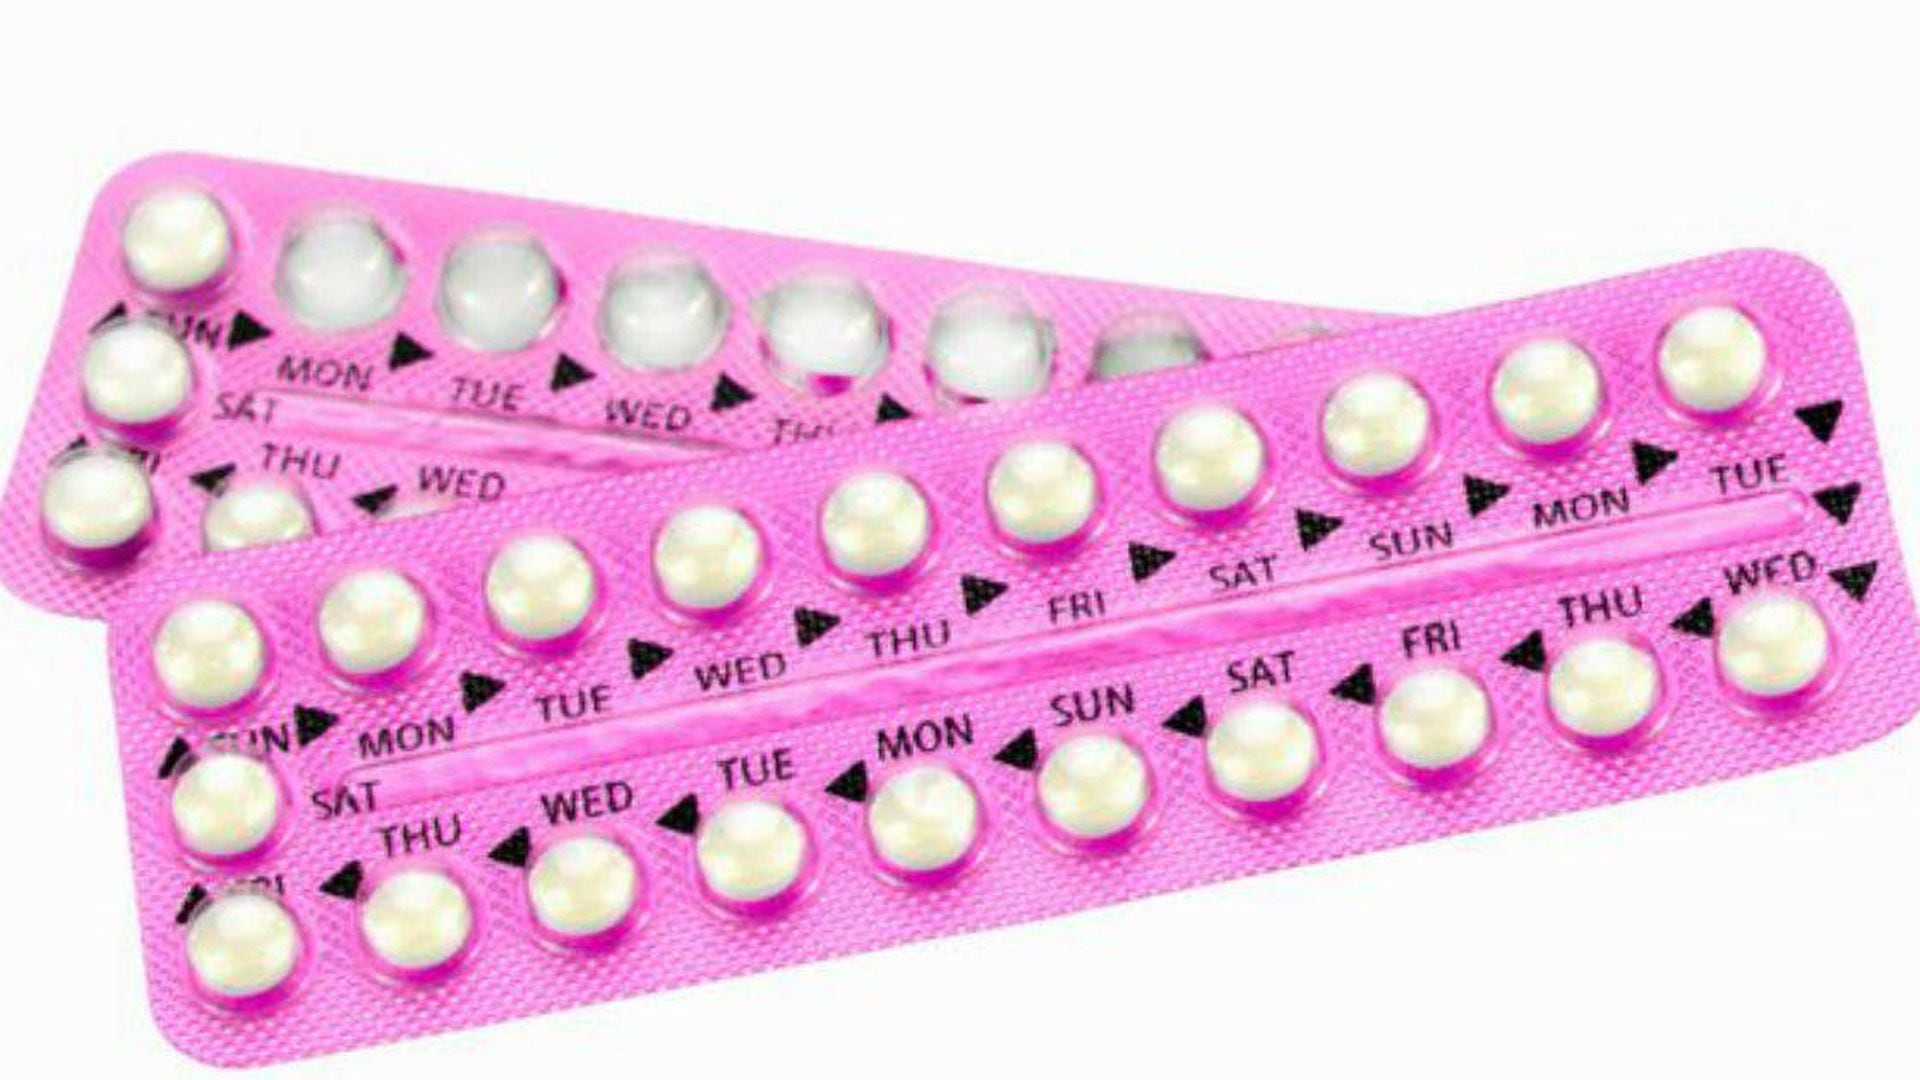 solamente explique Idealmente Cuánto tarda el cuerpo en eliminar hormonas de pastillas anticonceptivas?